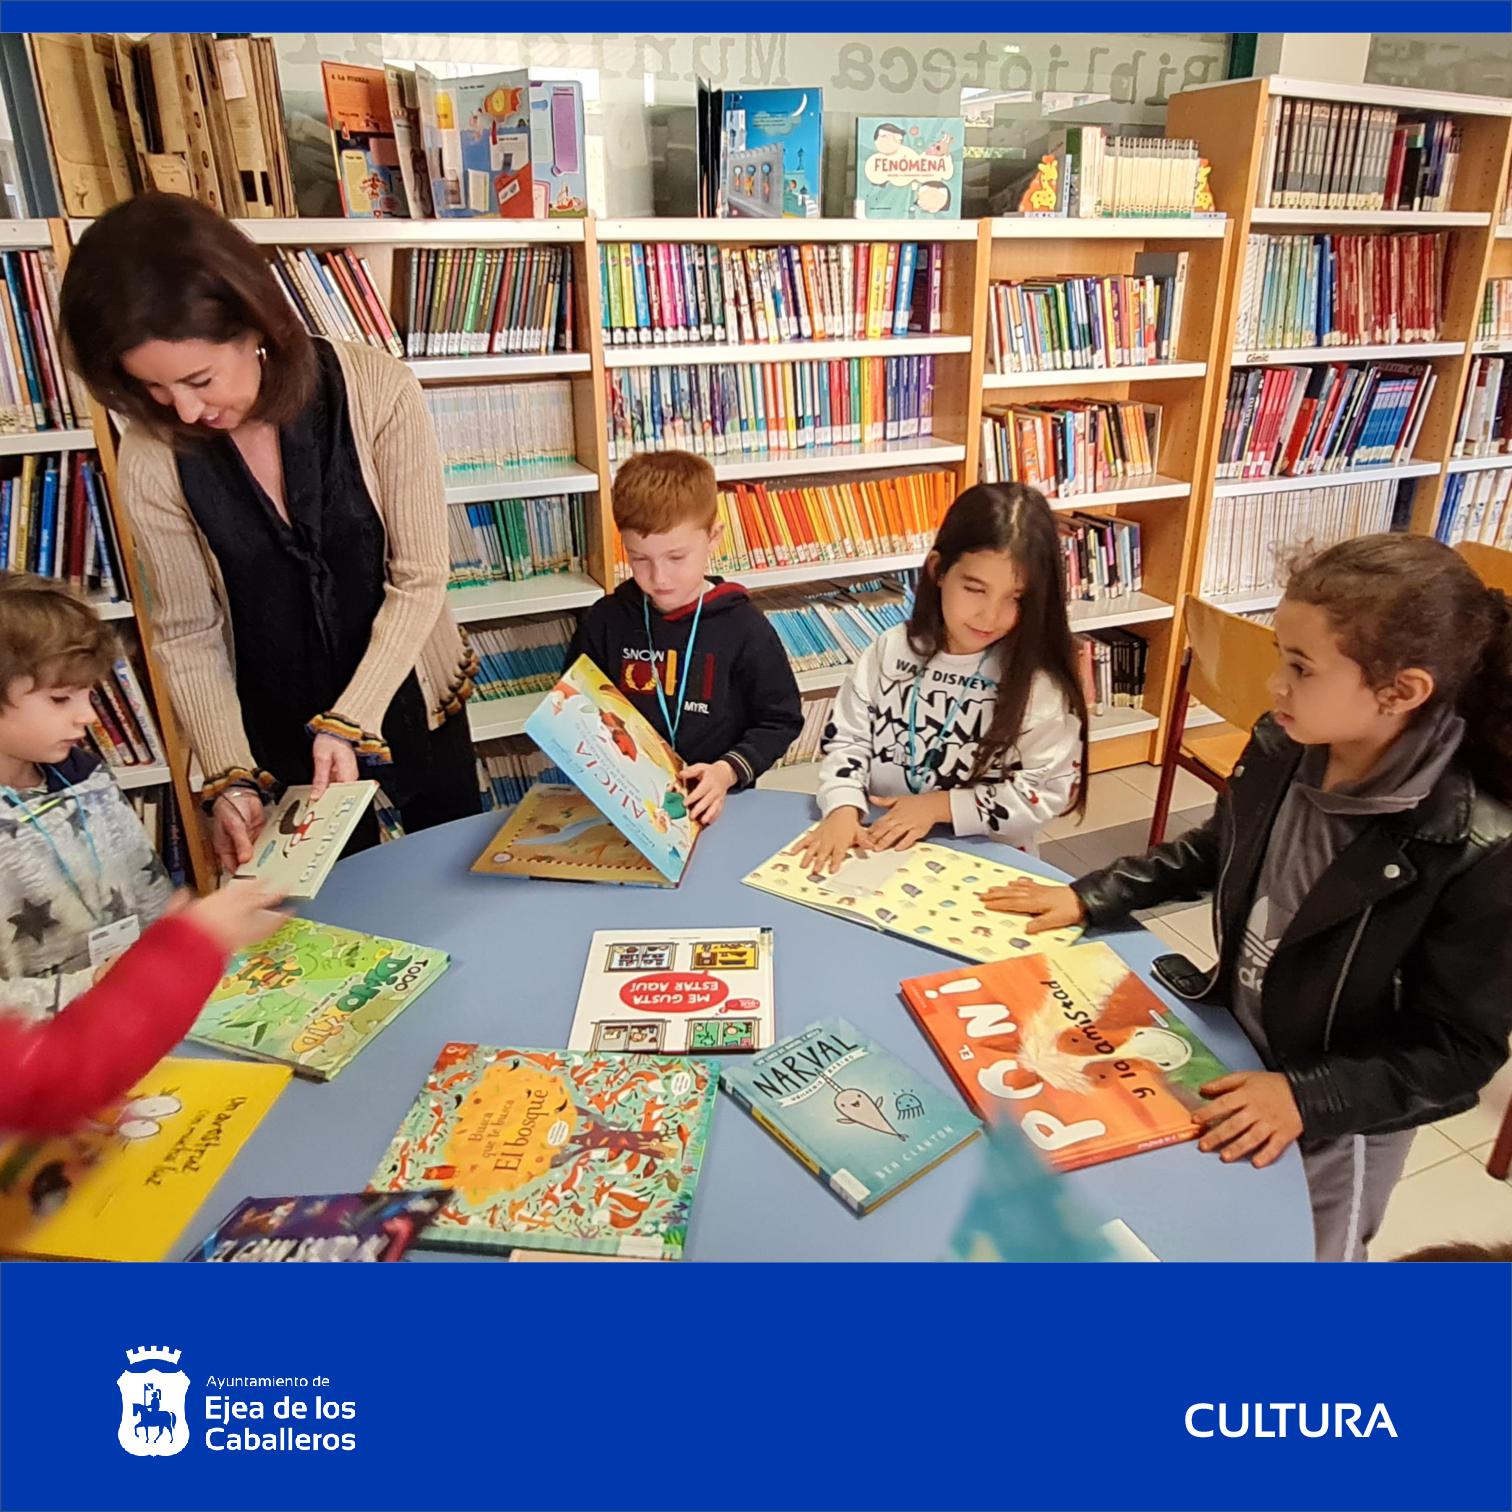 En este momento estás viendo 24 de octubre: La biblioteca de Ejea celebra el “Día de la Bibliotecas” con actividades para sus usuarios